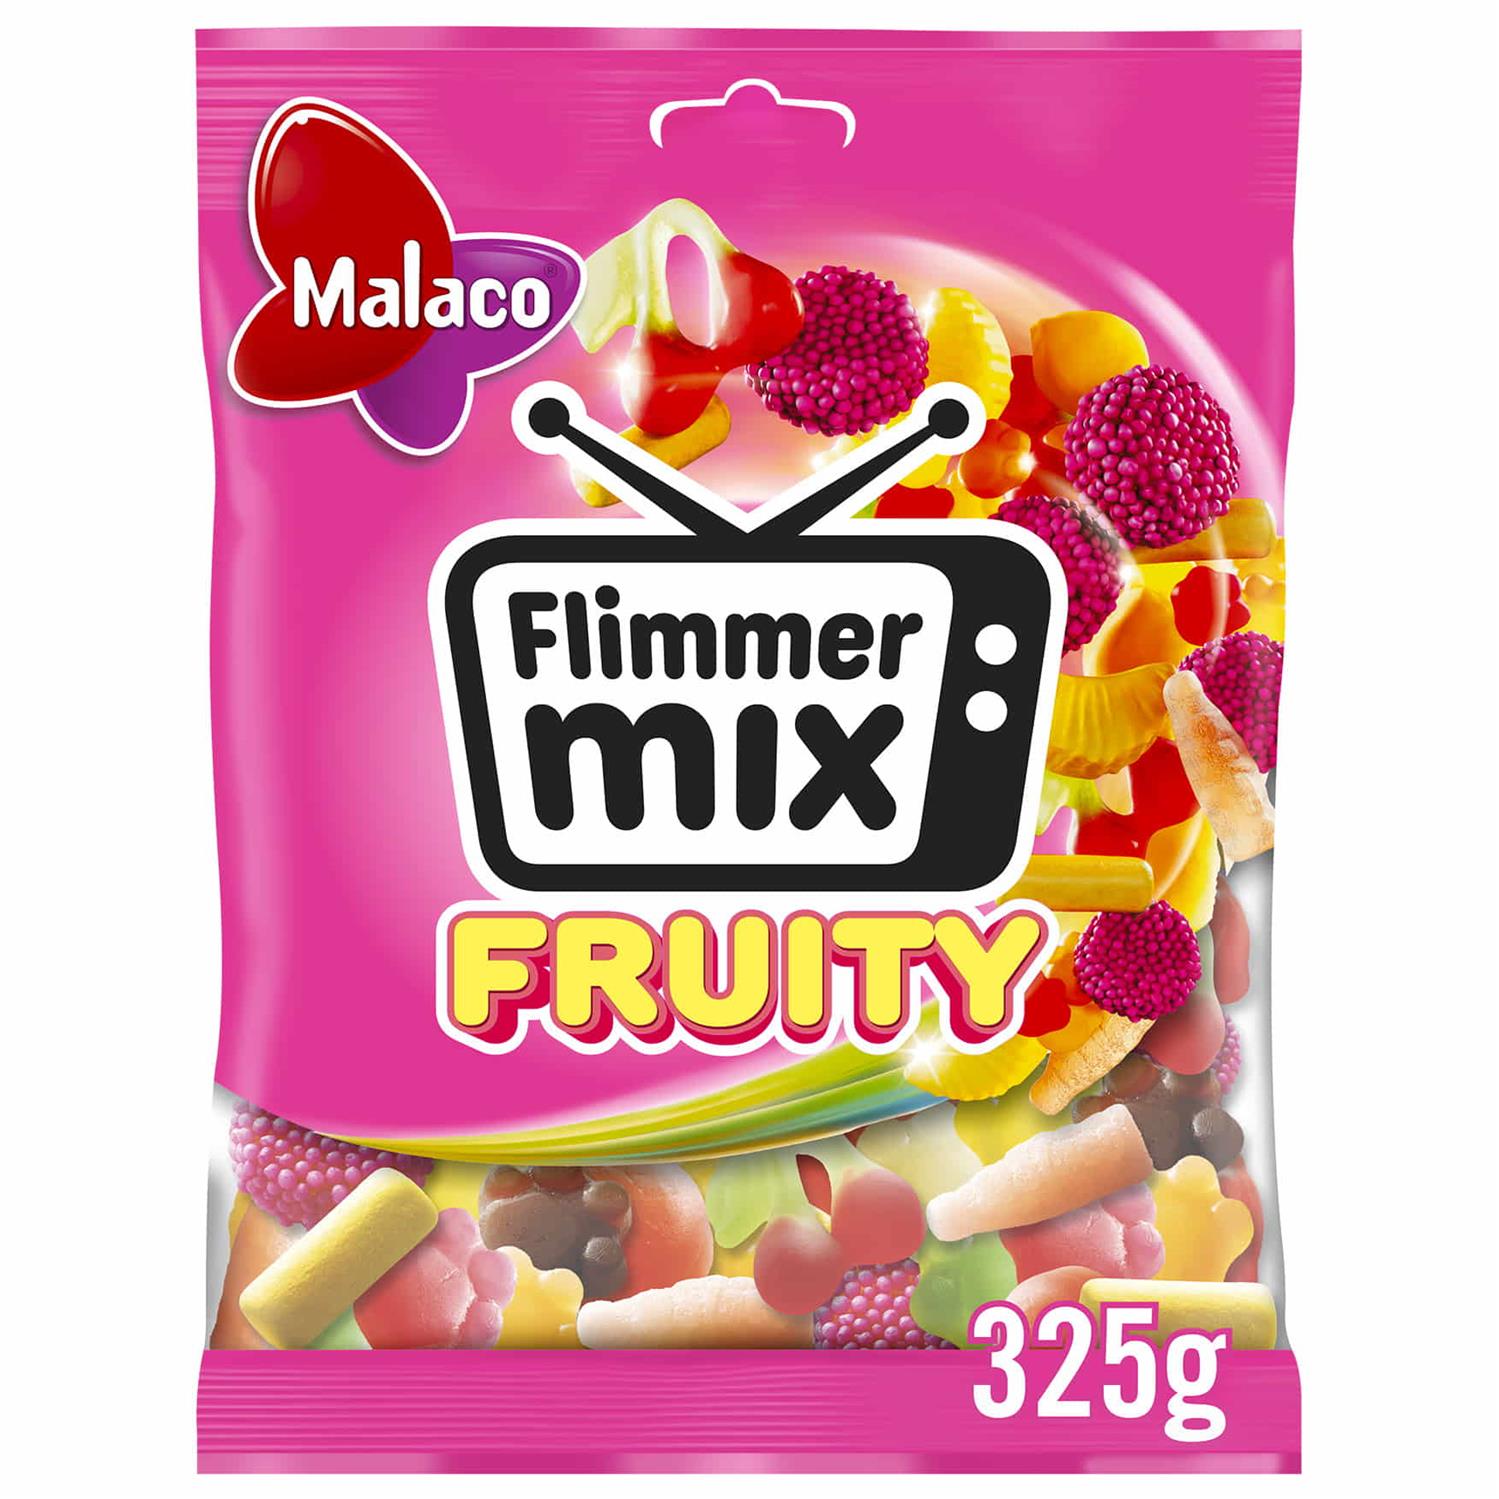 Træts webspindel Caroline nogle få Malaco Flimmer Mix Fruity 325g - Grænsehandel til billige priser